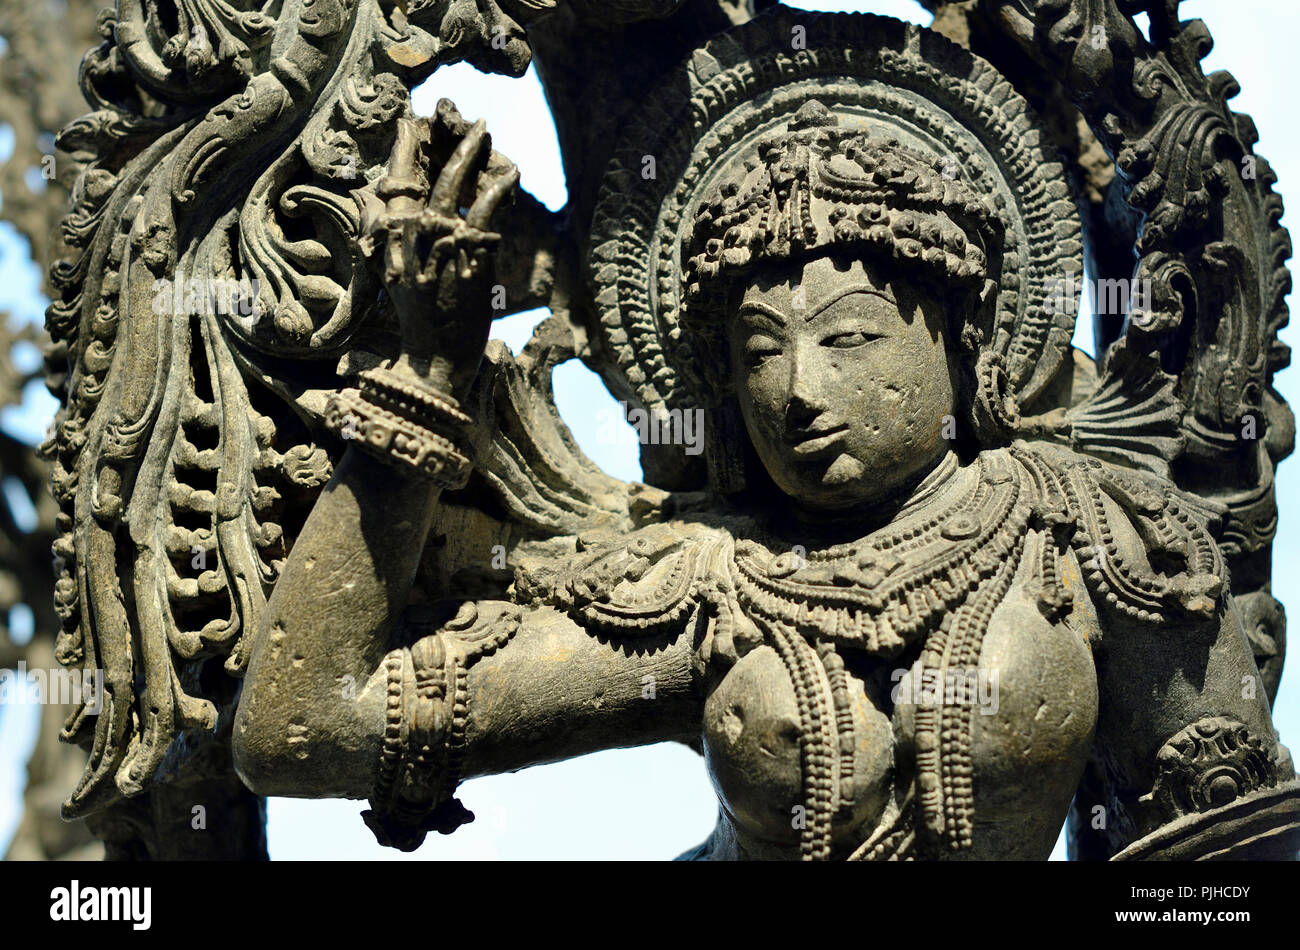 Le support de pierre figure à partir d'un temple Hoysala, Karnataka, Inde (1100-1200 AD) British Museum, Bloomsbury, London, England, UK. Banque D'Images